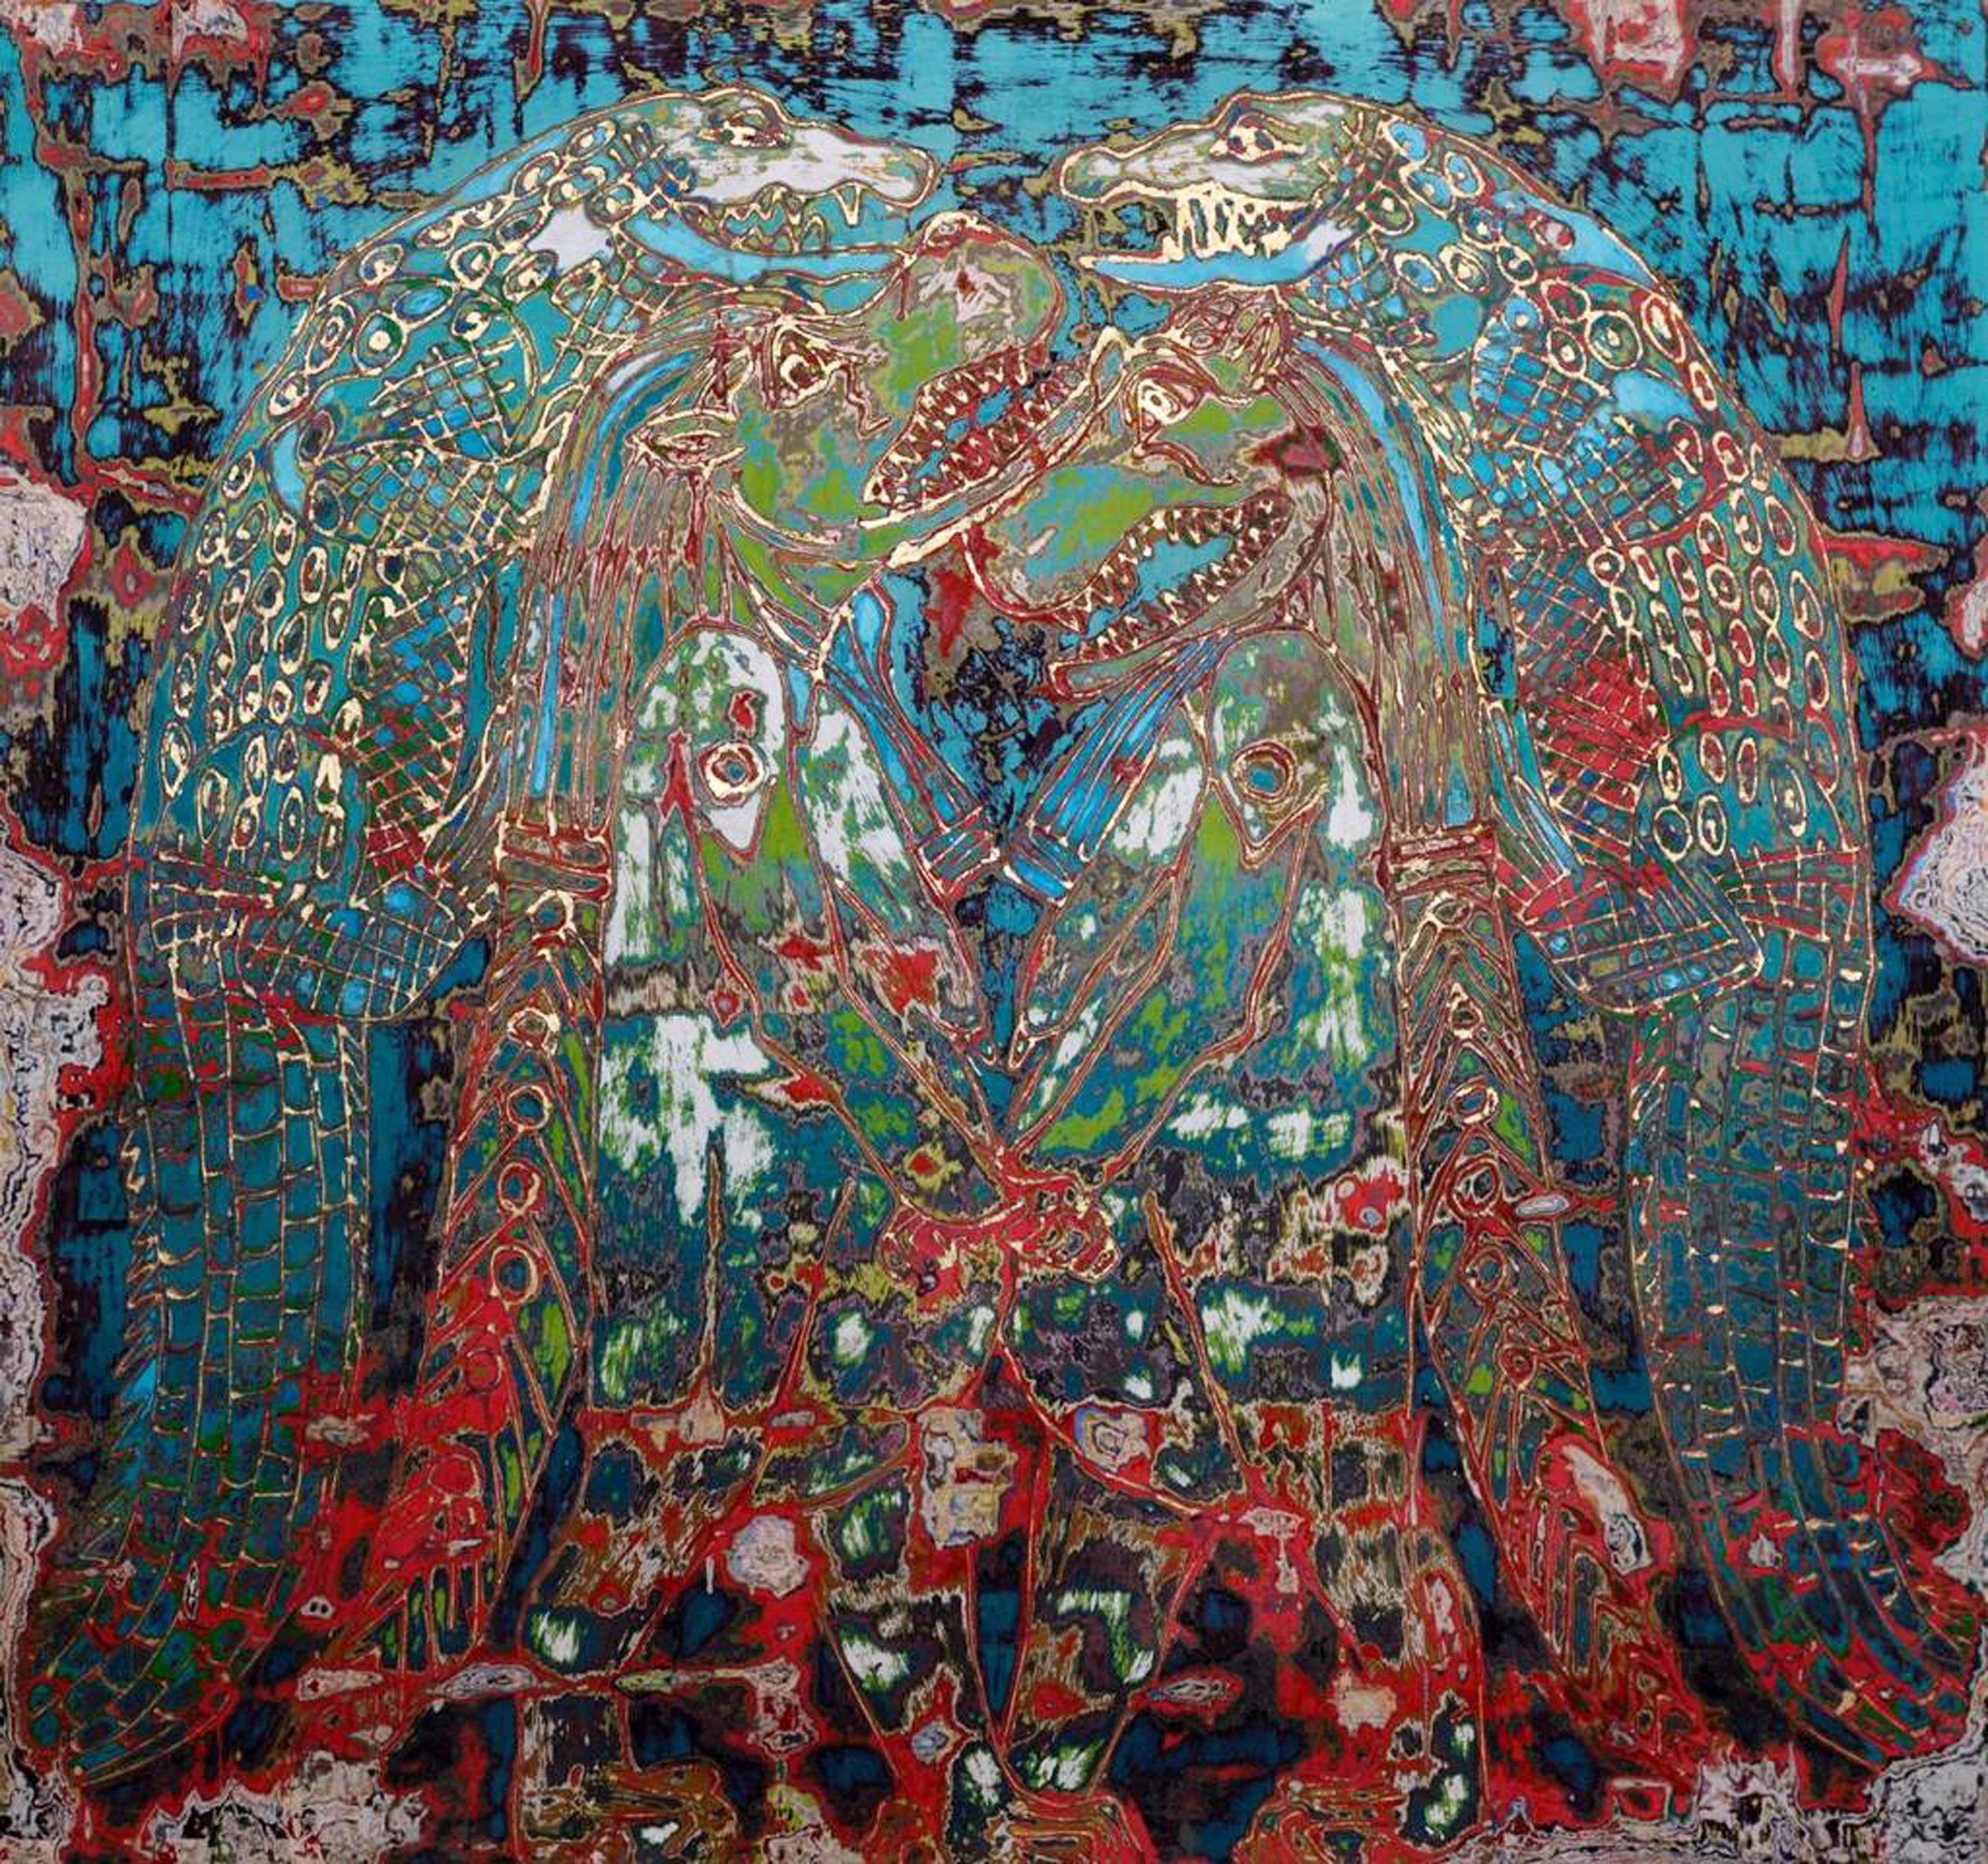 "Crocodile Mirage" peinture mixte 47" x 47" inch par Ibrahim Khatab

Ibrahim Khatab est né au Caire en 1984. Il travaille comme co-enseignant à l'université du Caire et mélange dans ses œuvres la peinture, l'art vidéo et l'installation. Il a